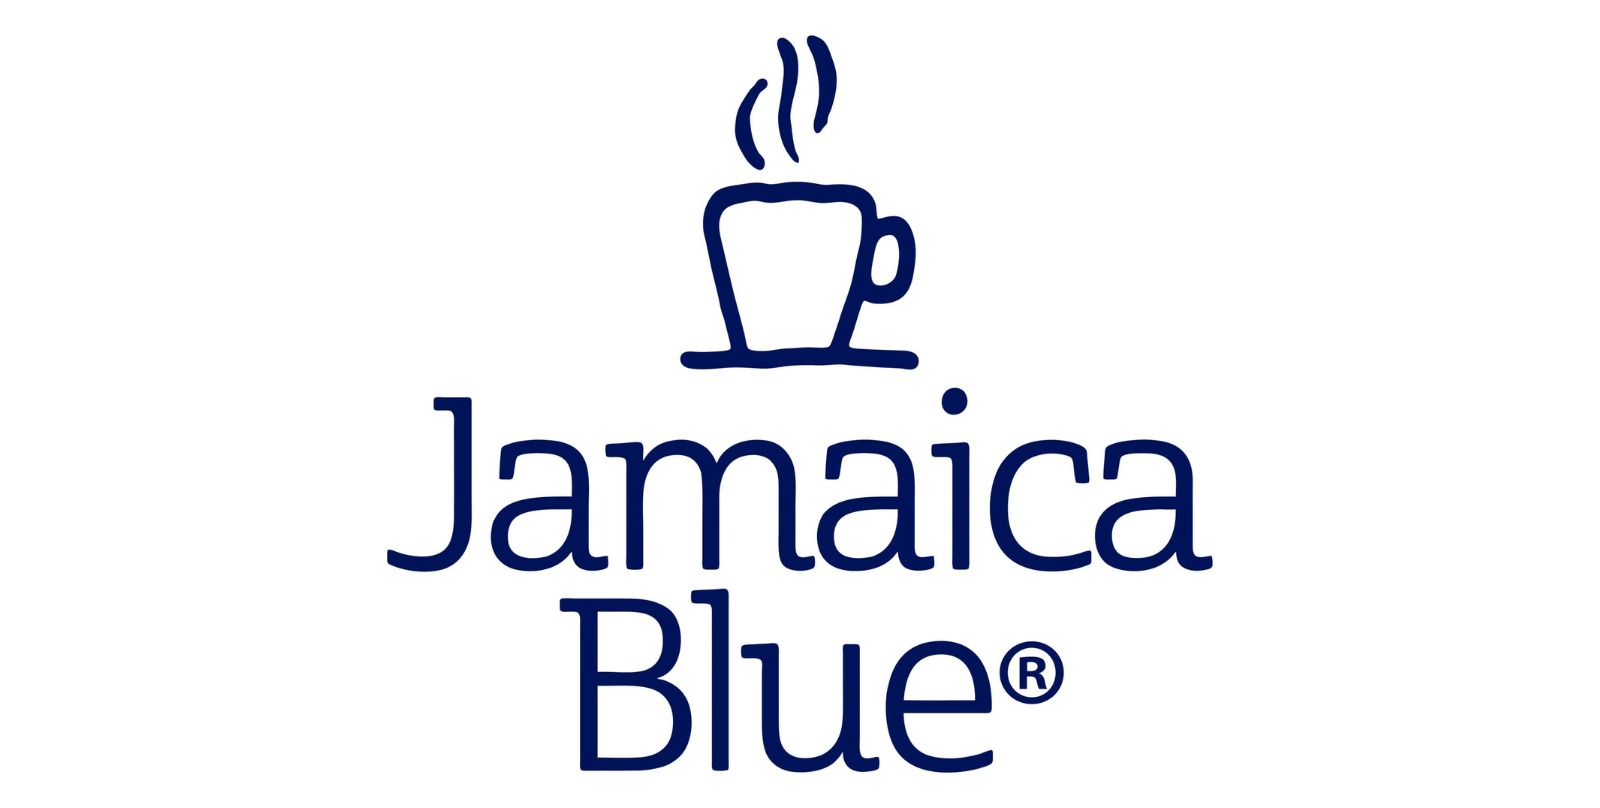 Jamaica Blue menu prices australia